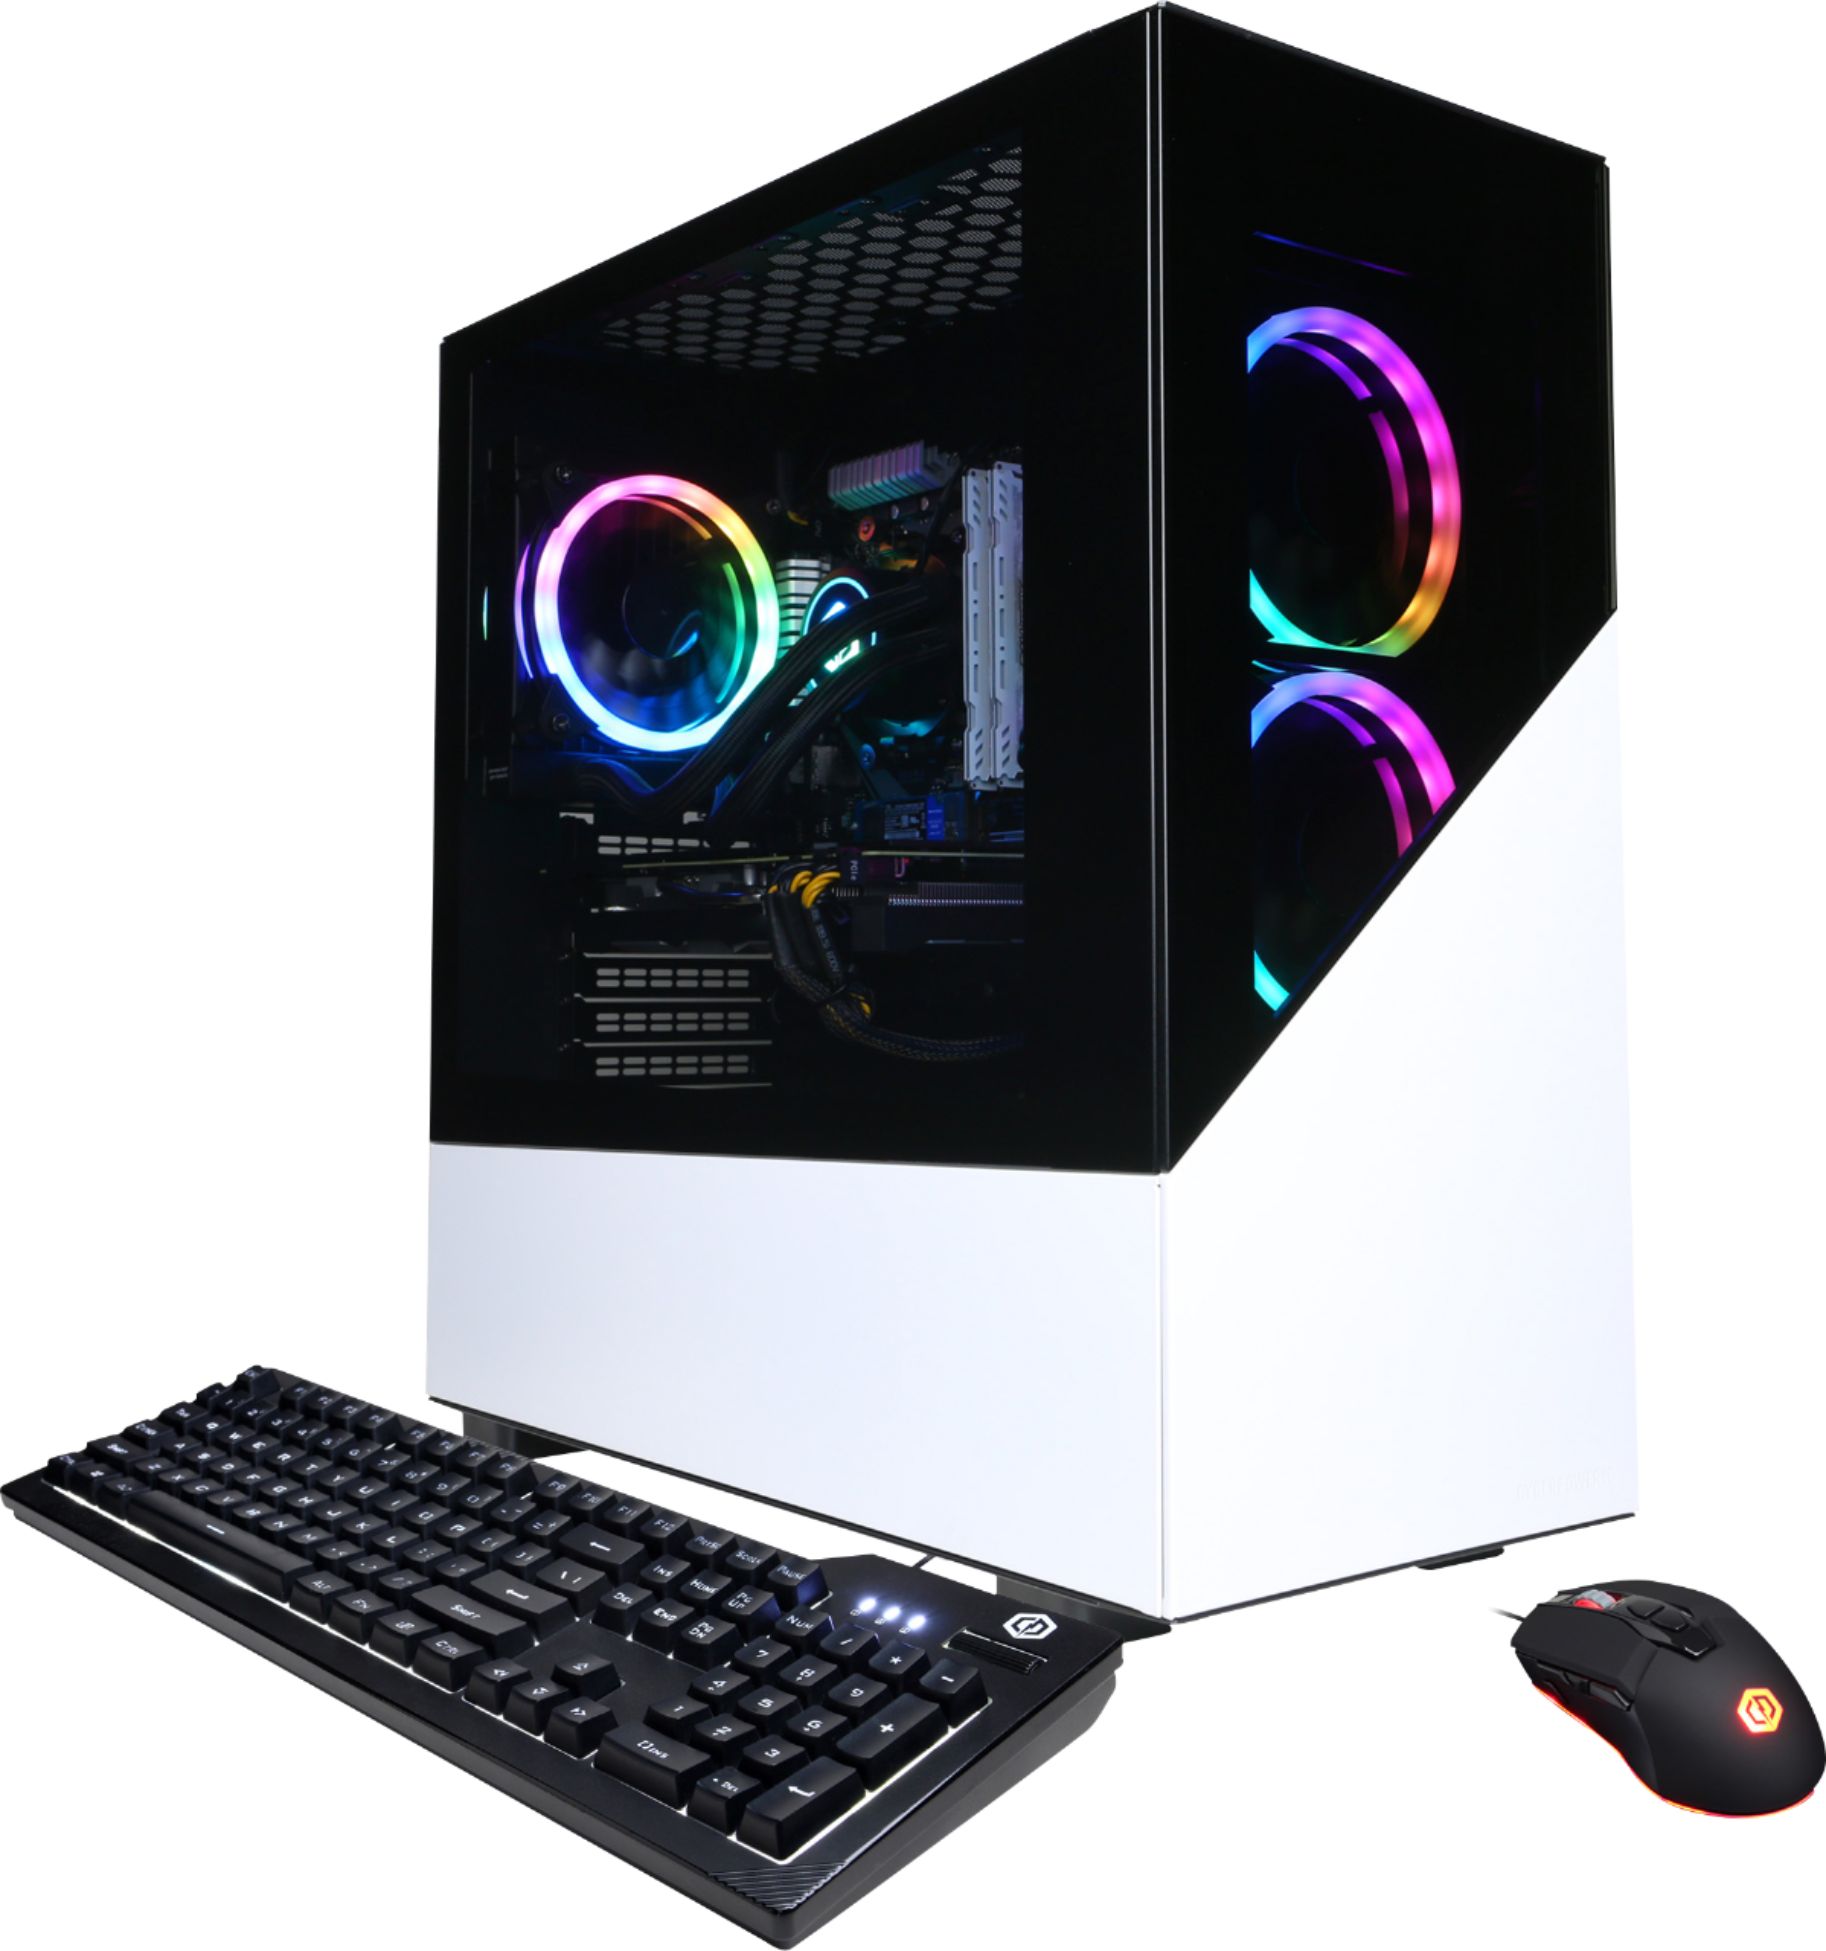 CyberPowerPC Gamer Supreme Gaming Desktop AMD  - Best Buy